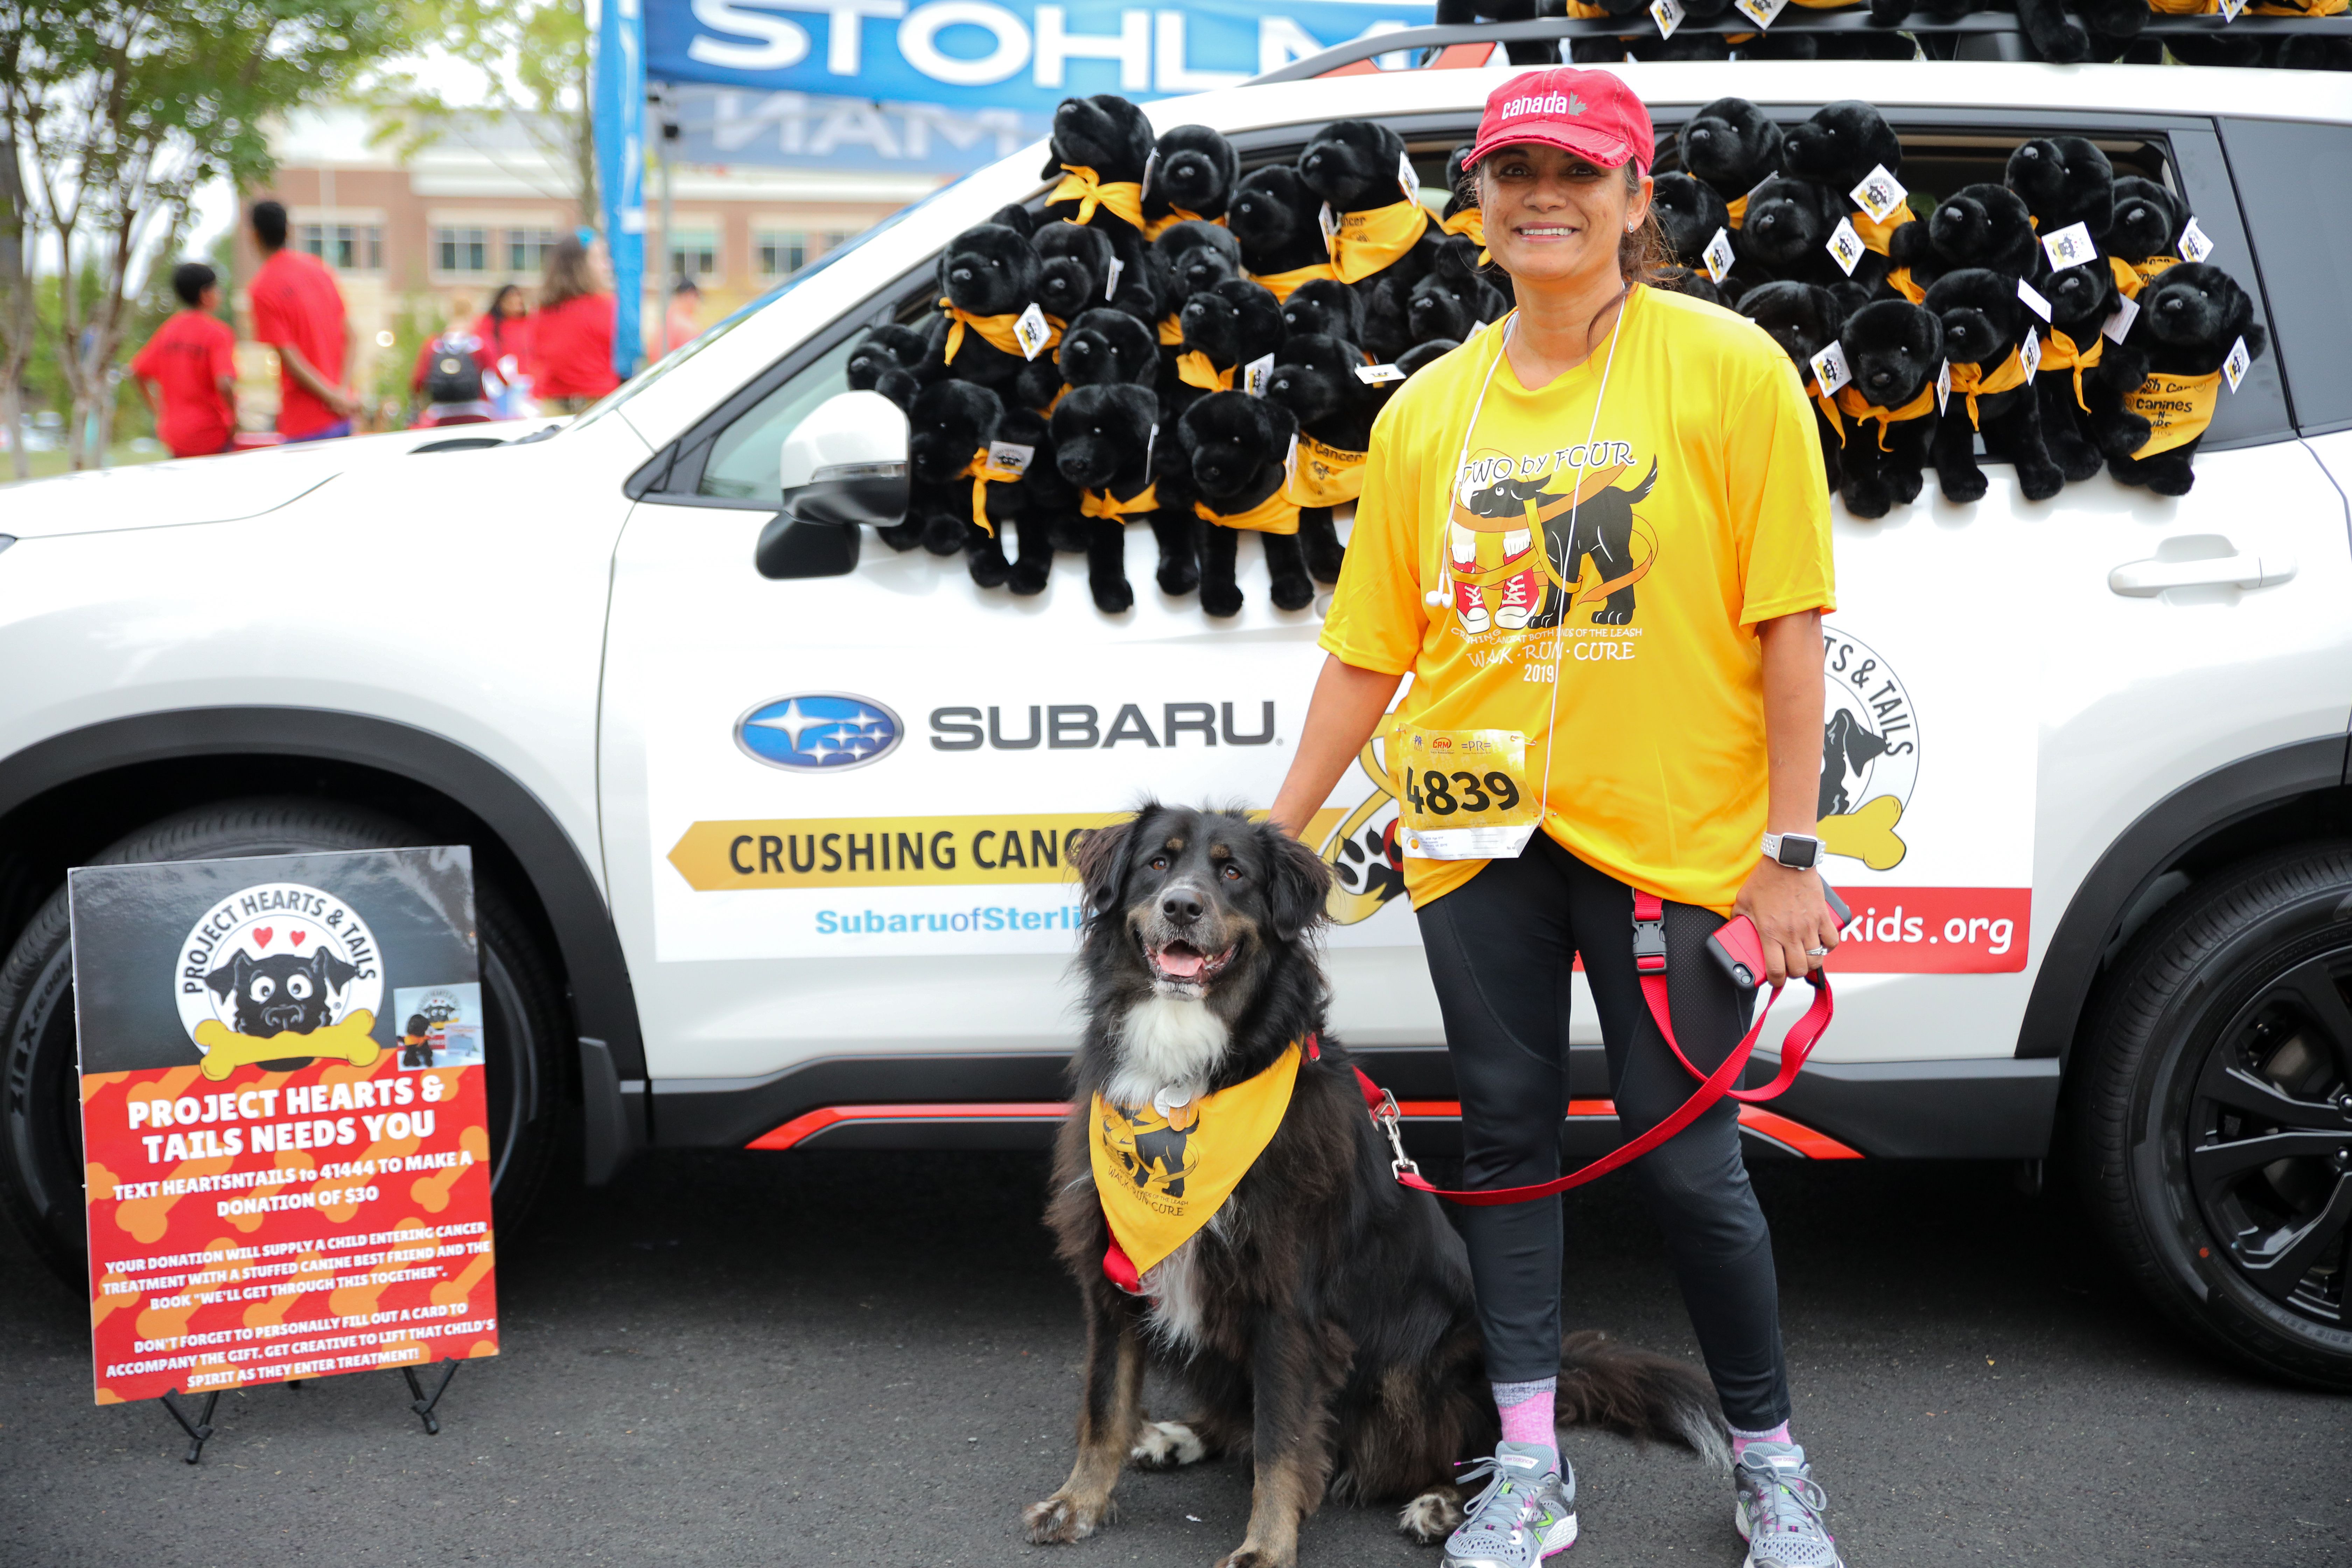 5K Dog Jog Fun Run for Cancer